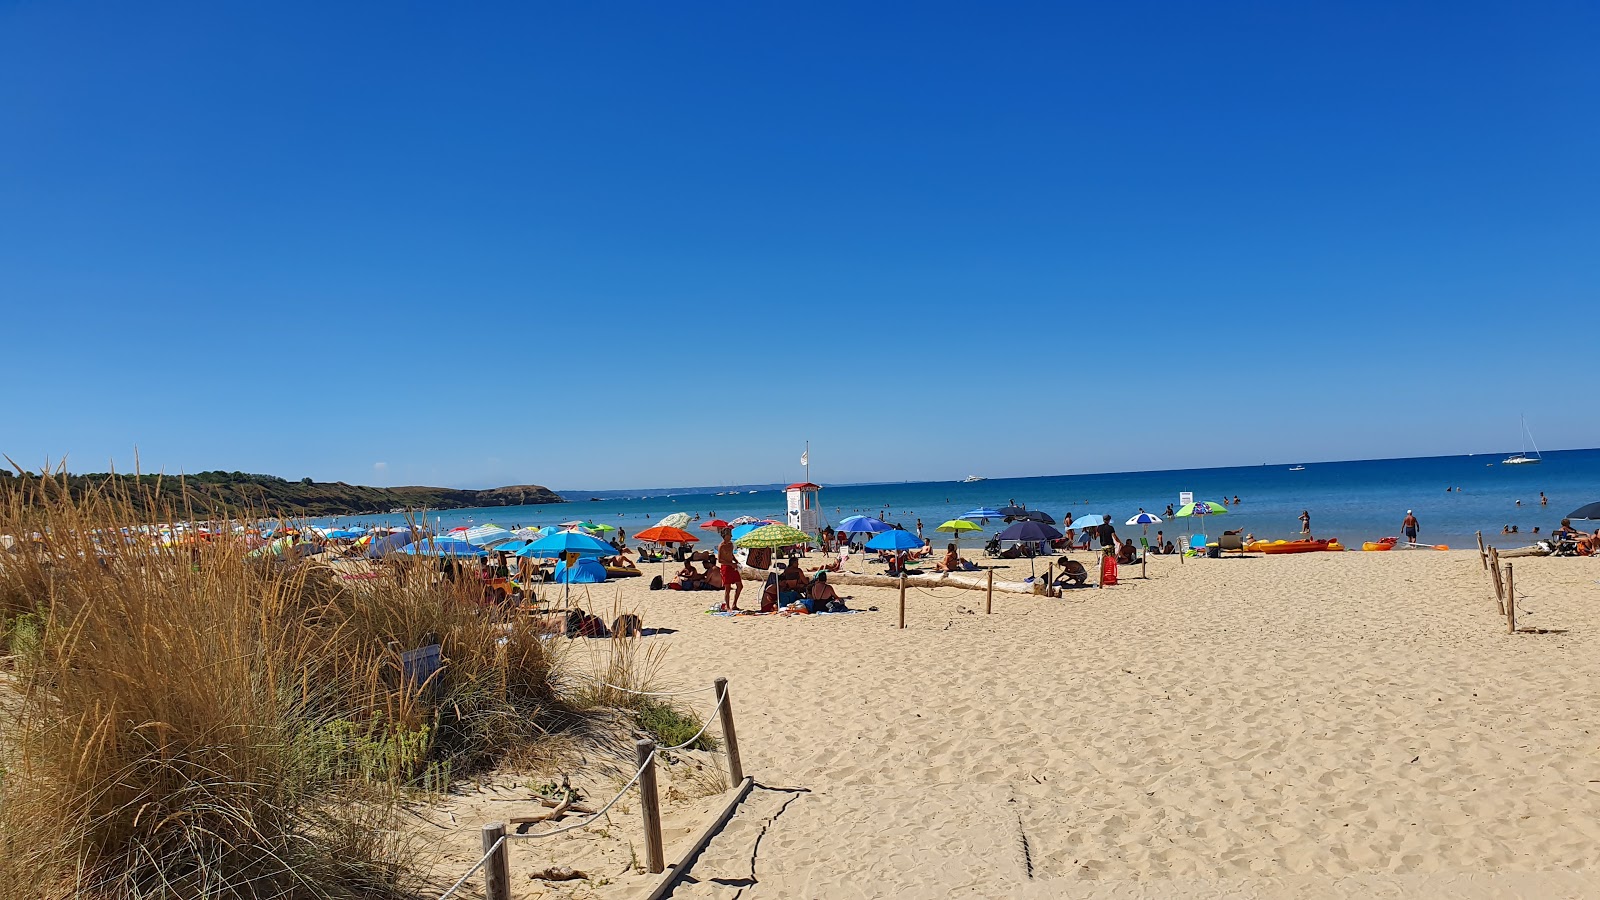 Spiaggia di Punta Penna'in fotoğrafı kısmen temiz temizlik seviyesi ile